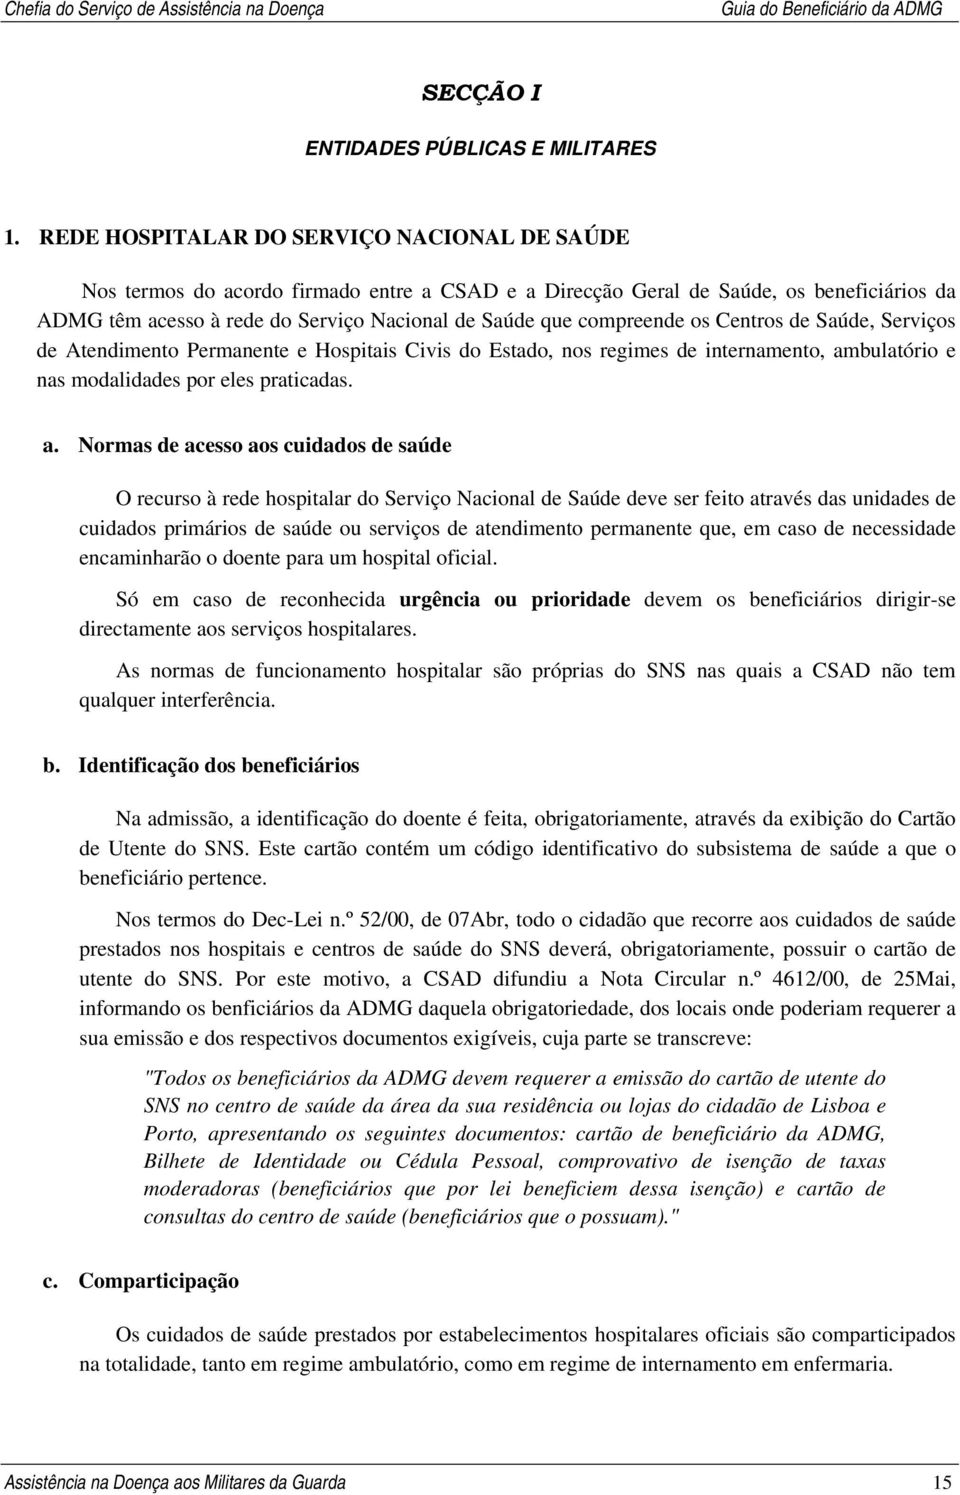 GUIA DO BENEFICIÁRIO DA ADMG - PDF Download grátis